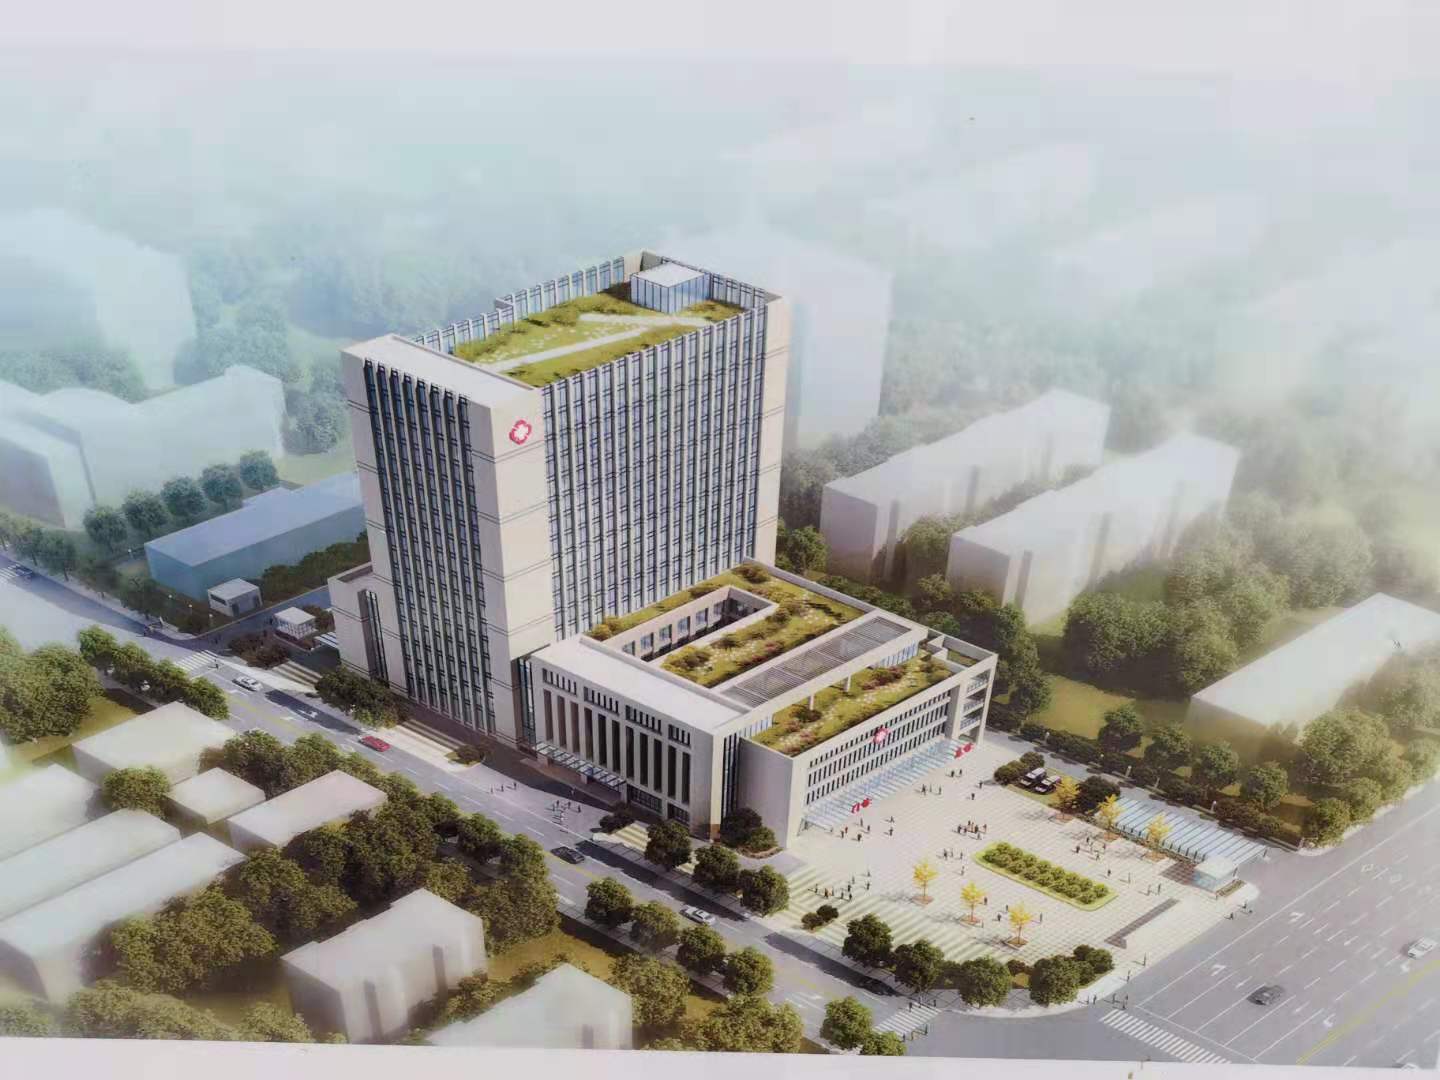 【在建项目信息】南阳市第一人民医院西院区门急诊及医技楼、综合病房楼建设项目